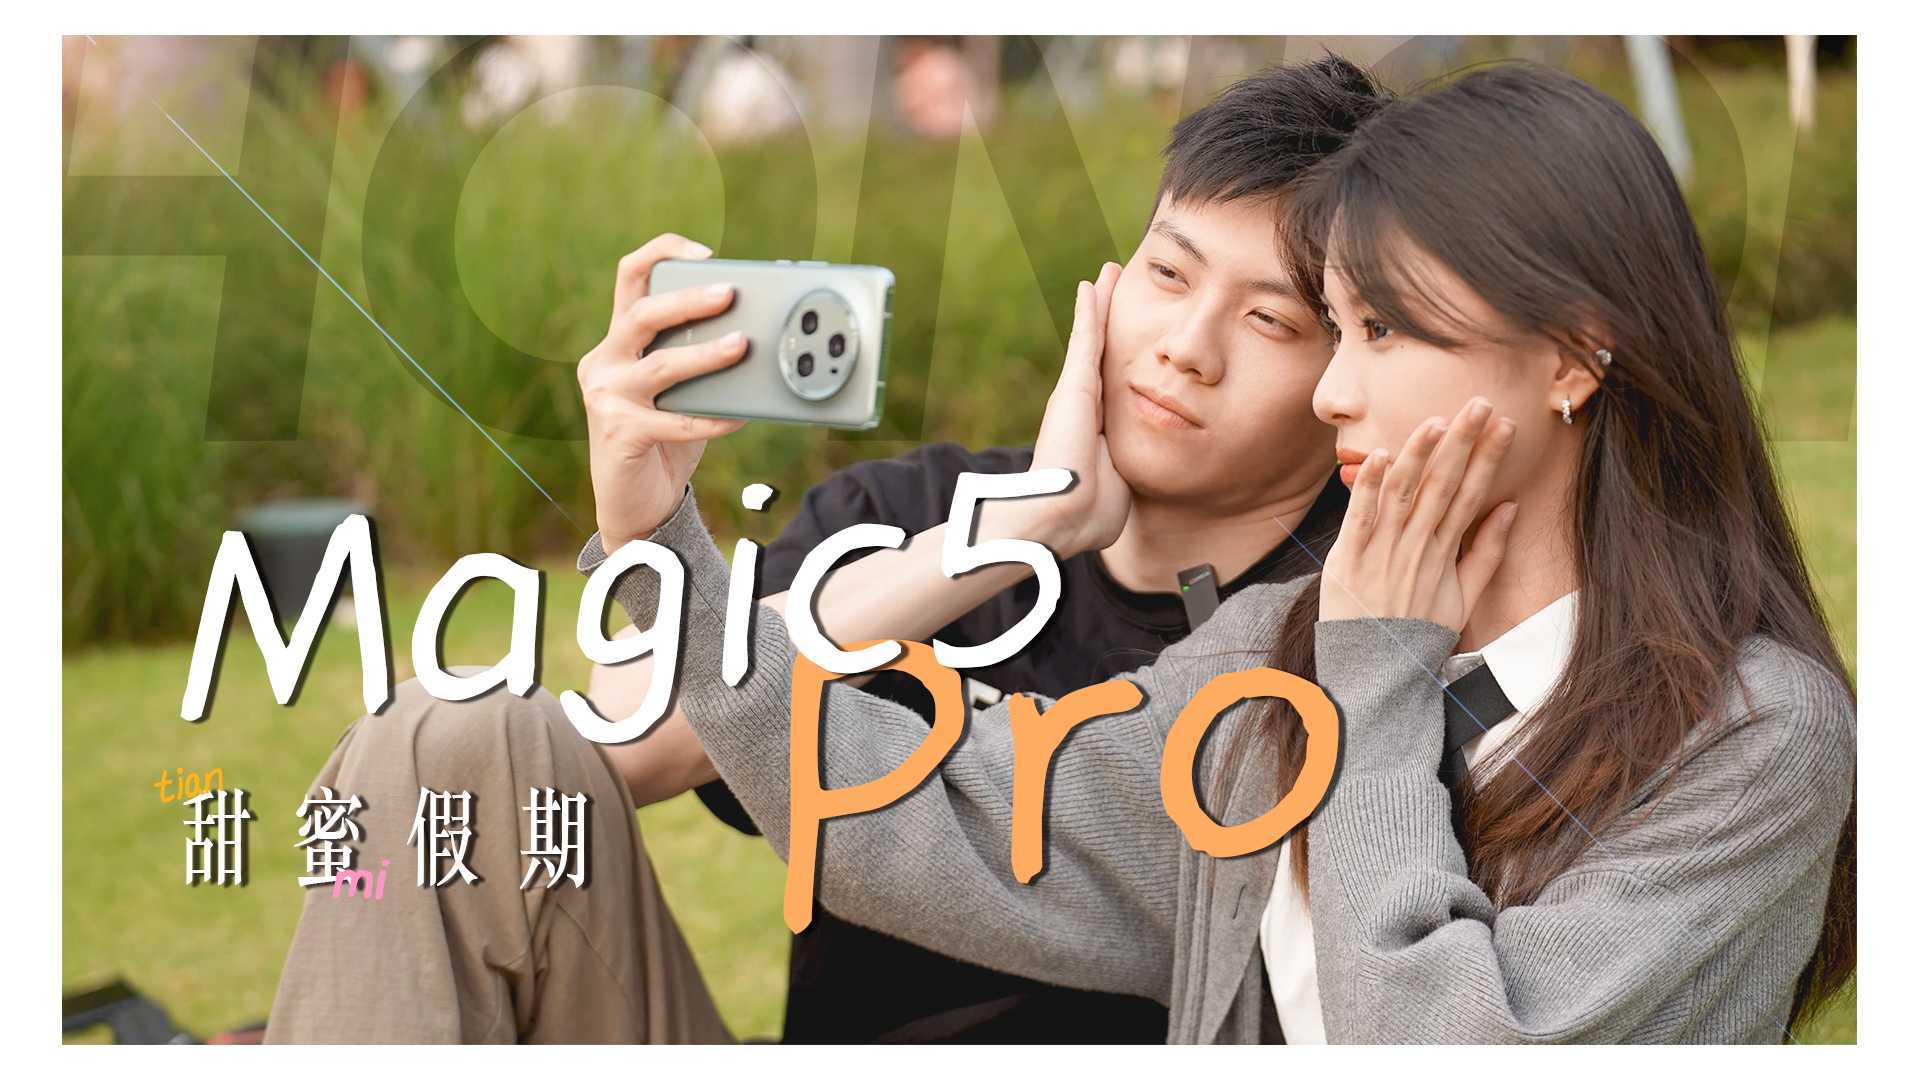 来点不一样的，带着荣耀Magic5 Pro去约会~